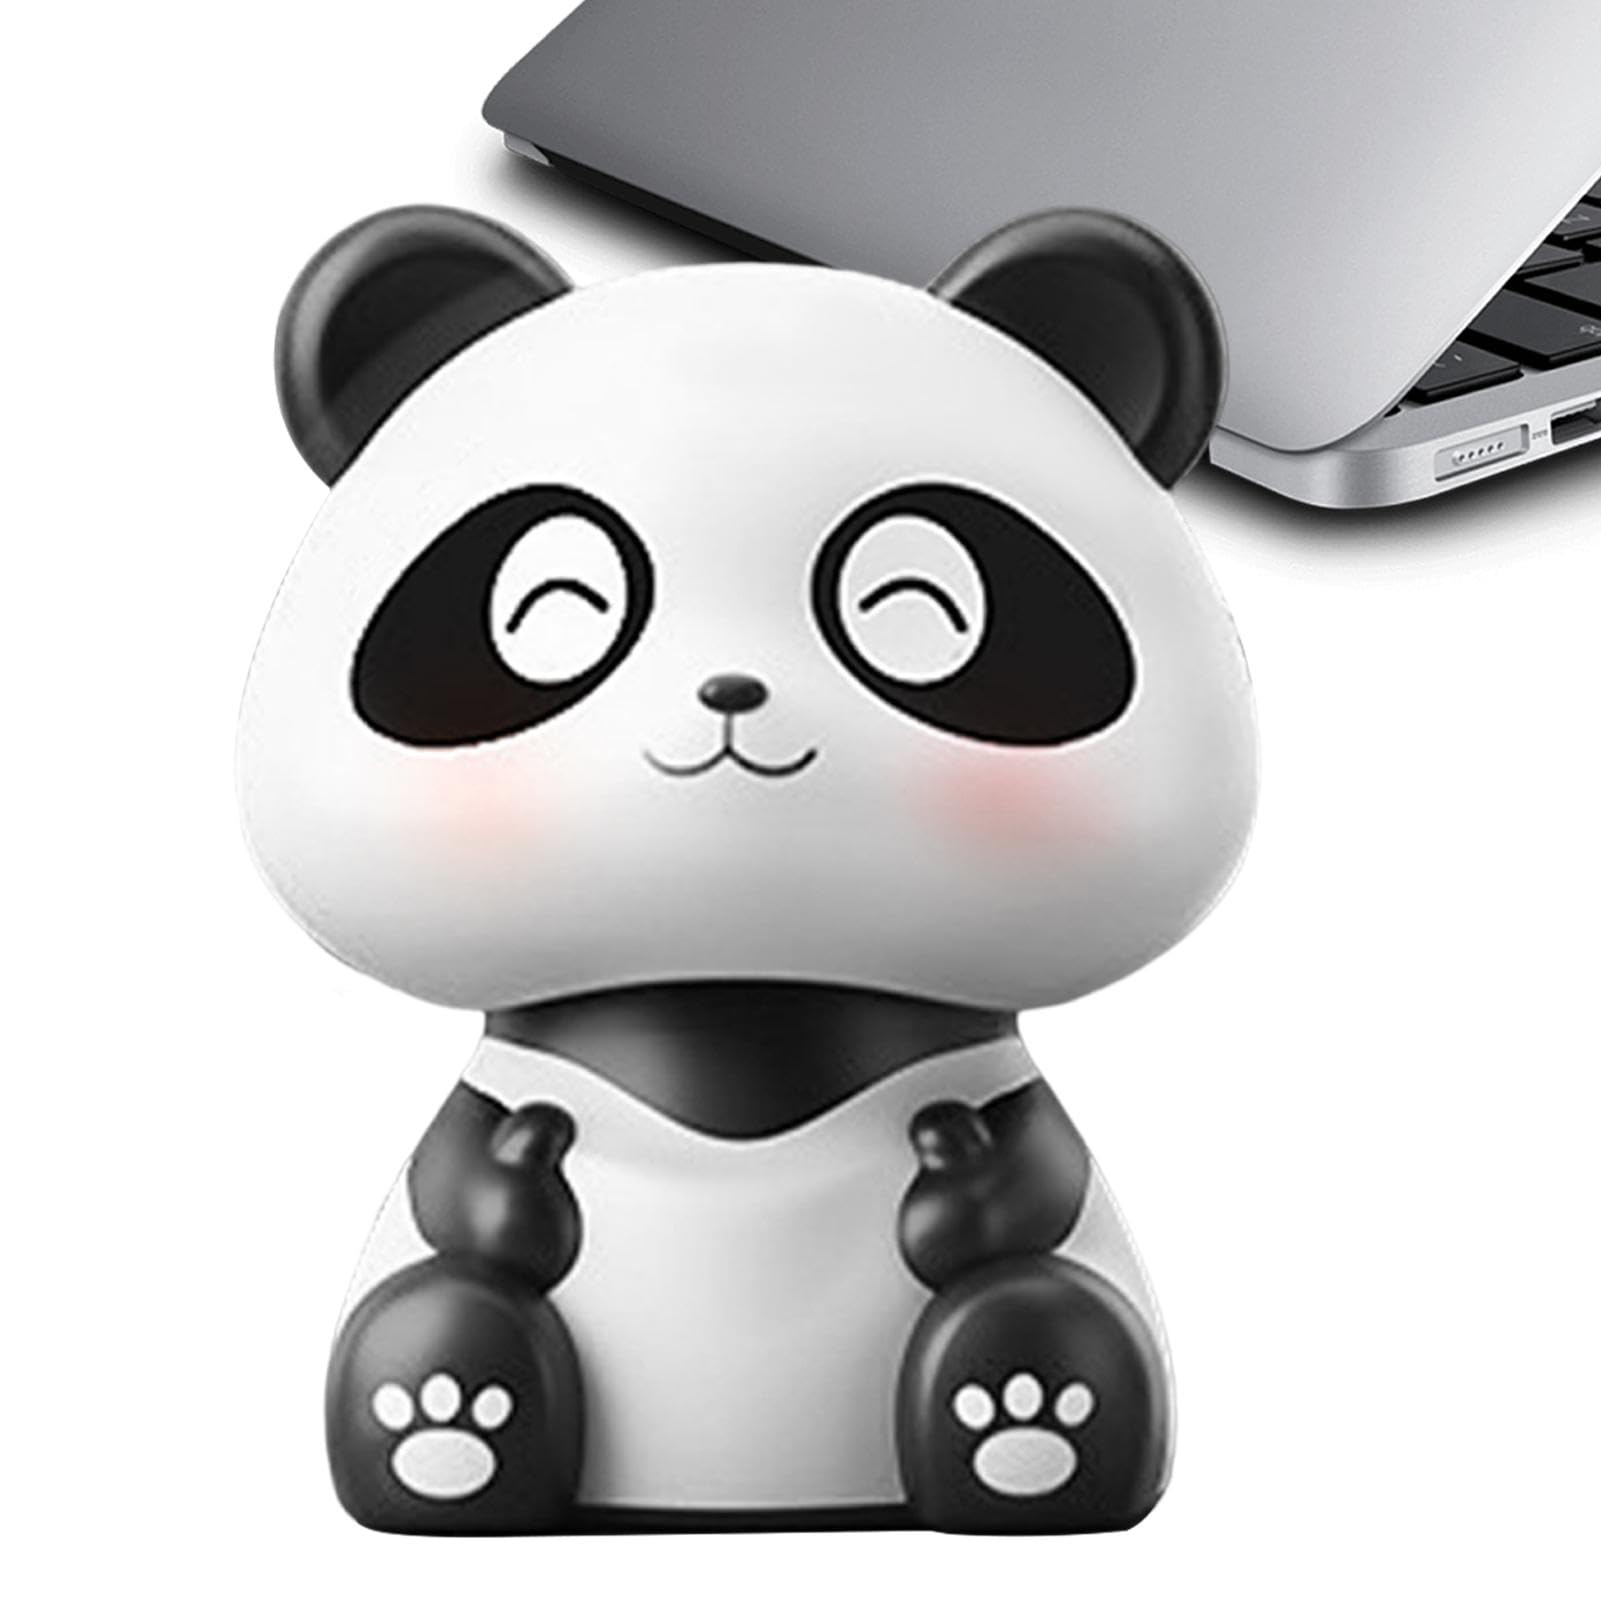 Moxeupon Panda-Armaturenbrett-Dekorationen,Auto-Armaturenbrett-Dekorationen Panda | Panda-Auto-Innendekoration - Schöner Panda-Auto-Armaturenbrett-Dekor, solarbetriebener schüttelnder Kopf-Panda für von Moxeupon